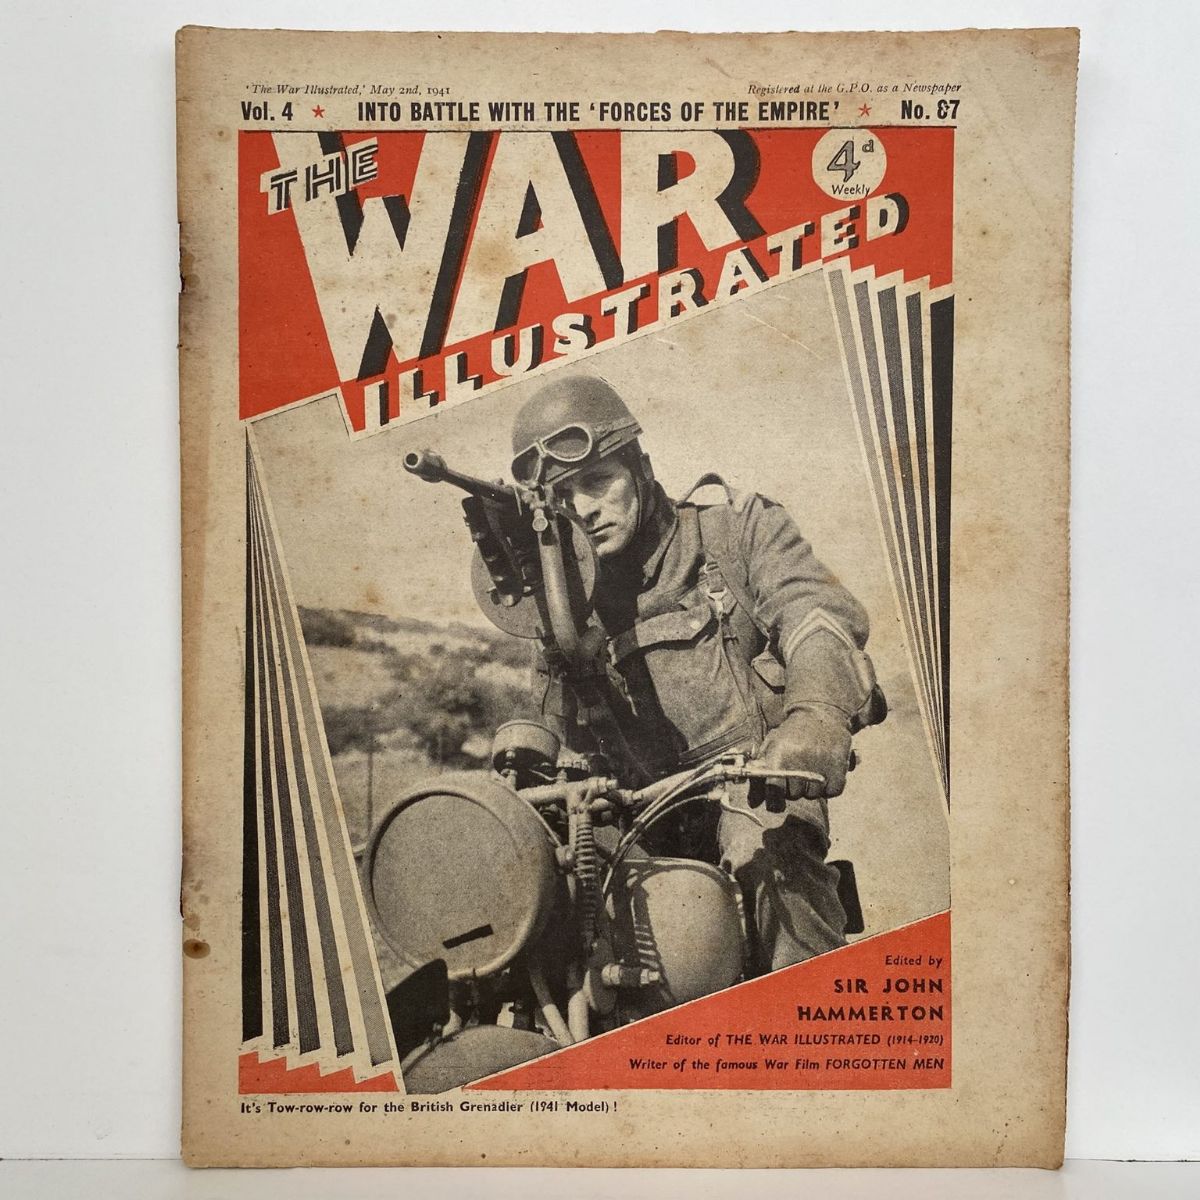 THE WAR ILLUSTRATED - Vol 4, No 87, 2nd May 1941